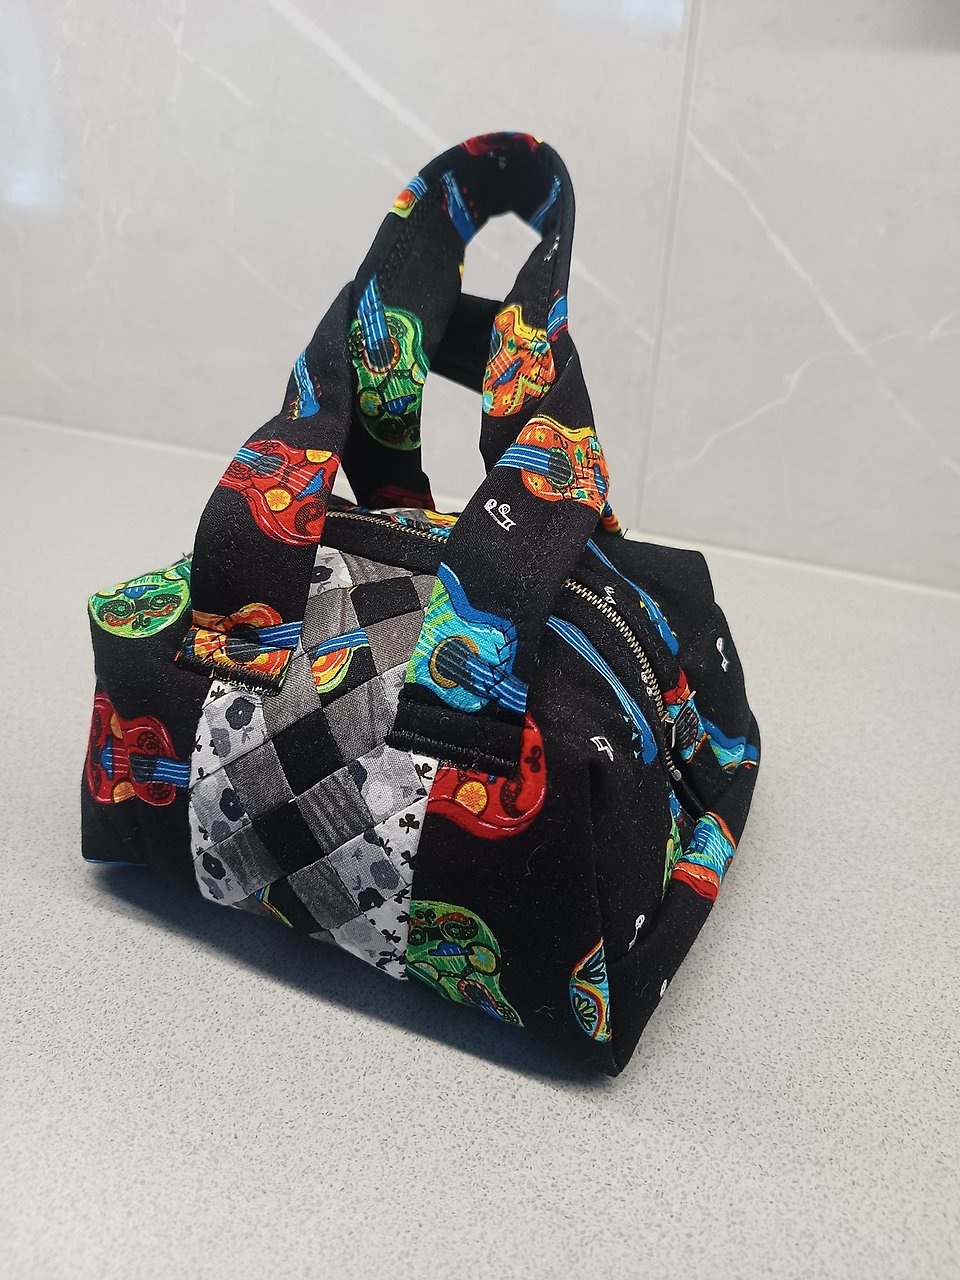 Bild av handväska i textil, gjord i lappteknik. 